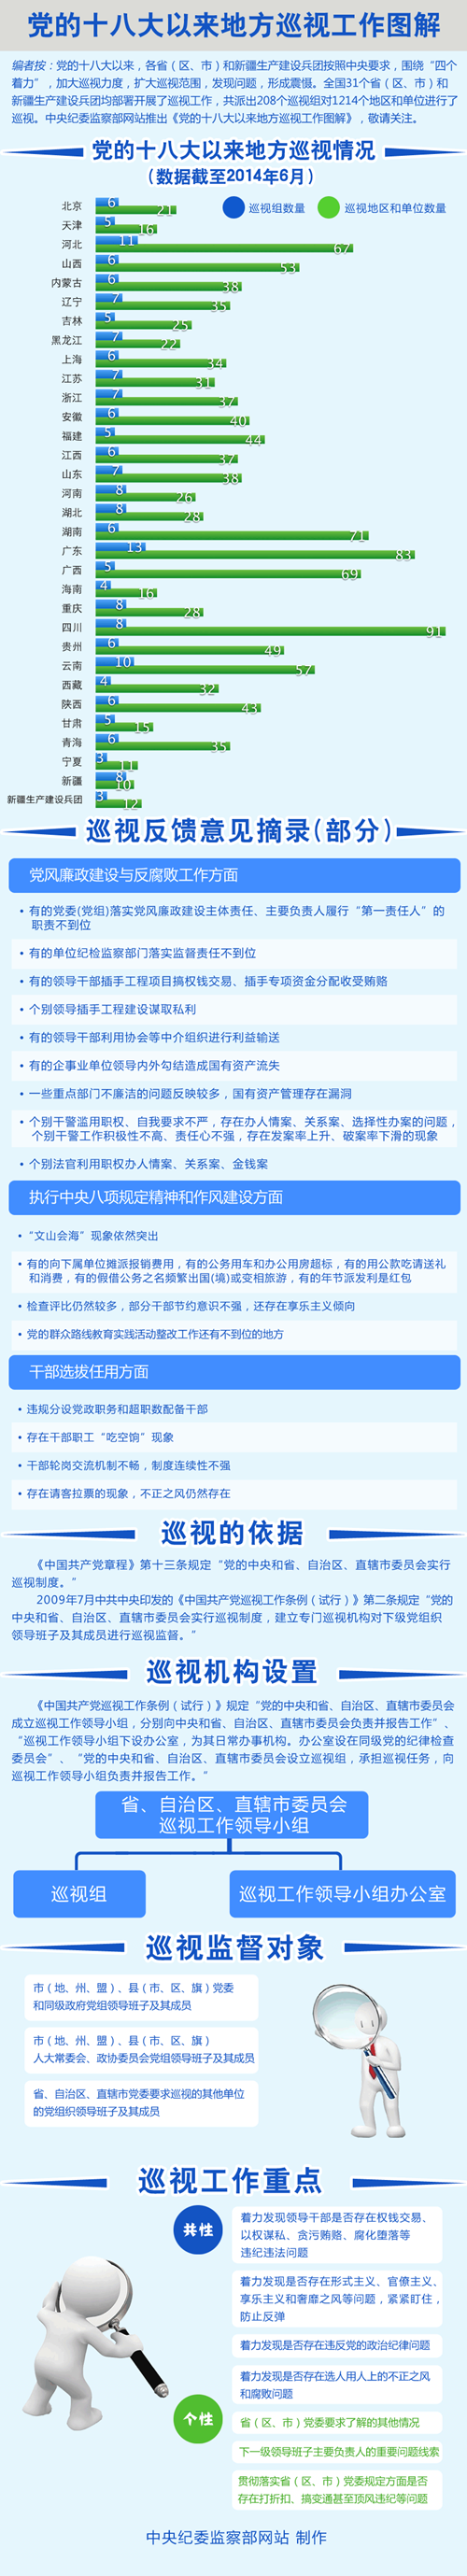 中纪委网站发布十八大以来地方巡视工作图解